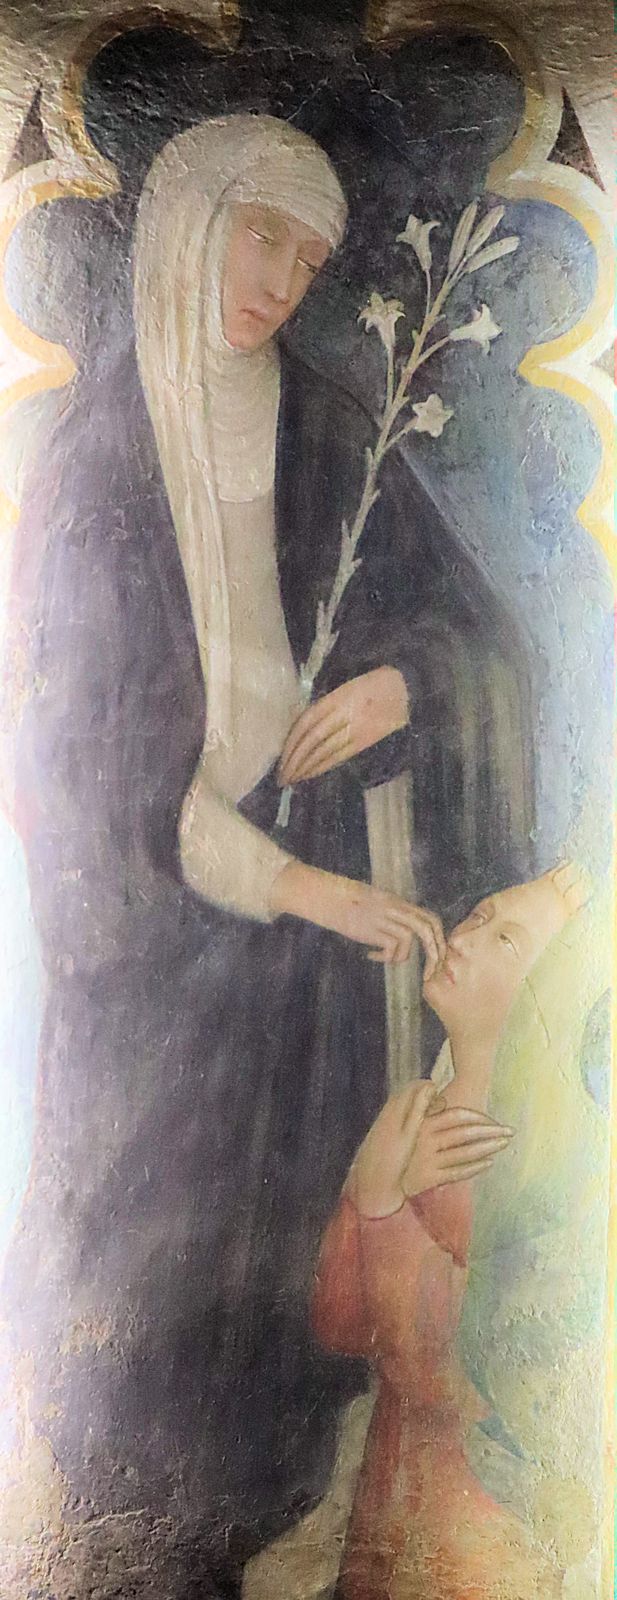 Andrea Vanni, der zu Katharinas Freundes- und Schülerkreis gehörte: Fresko, um 1375 - also noch zu Katharinas Lebzeit - entstanden, in der Basilika San Domenico in Siena